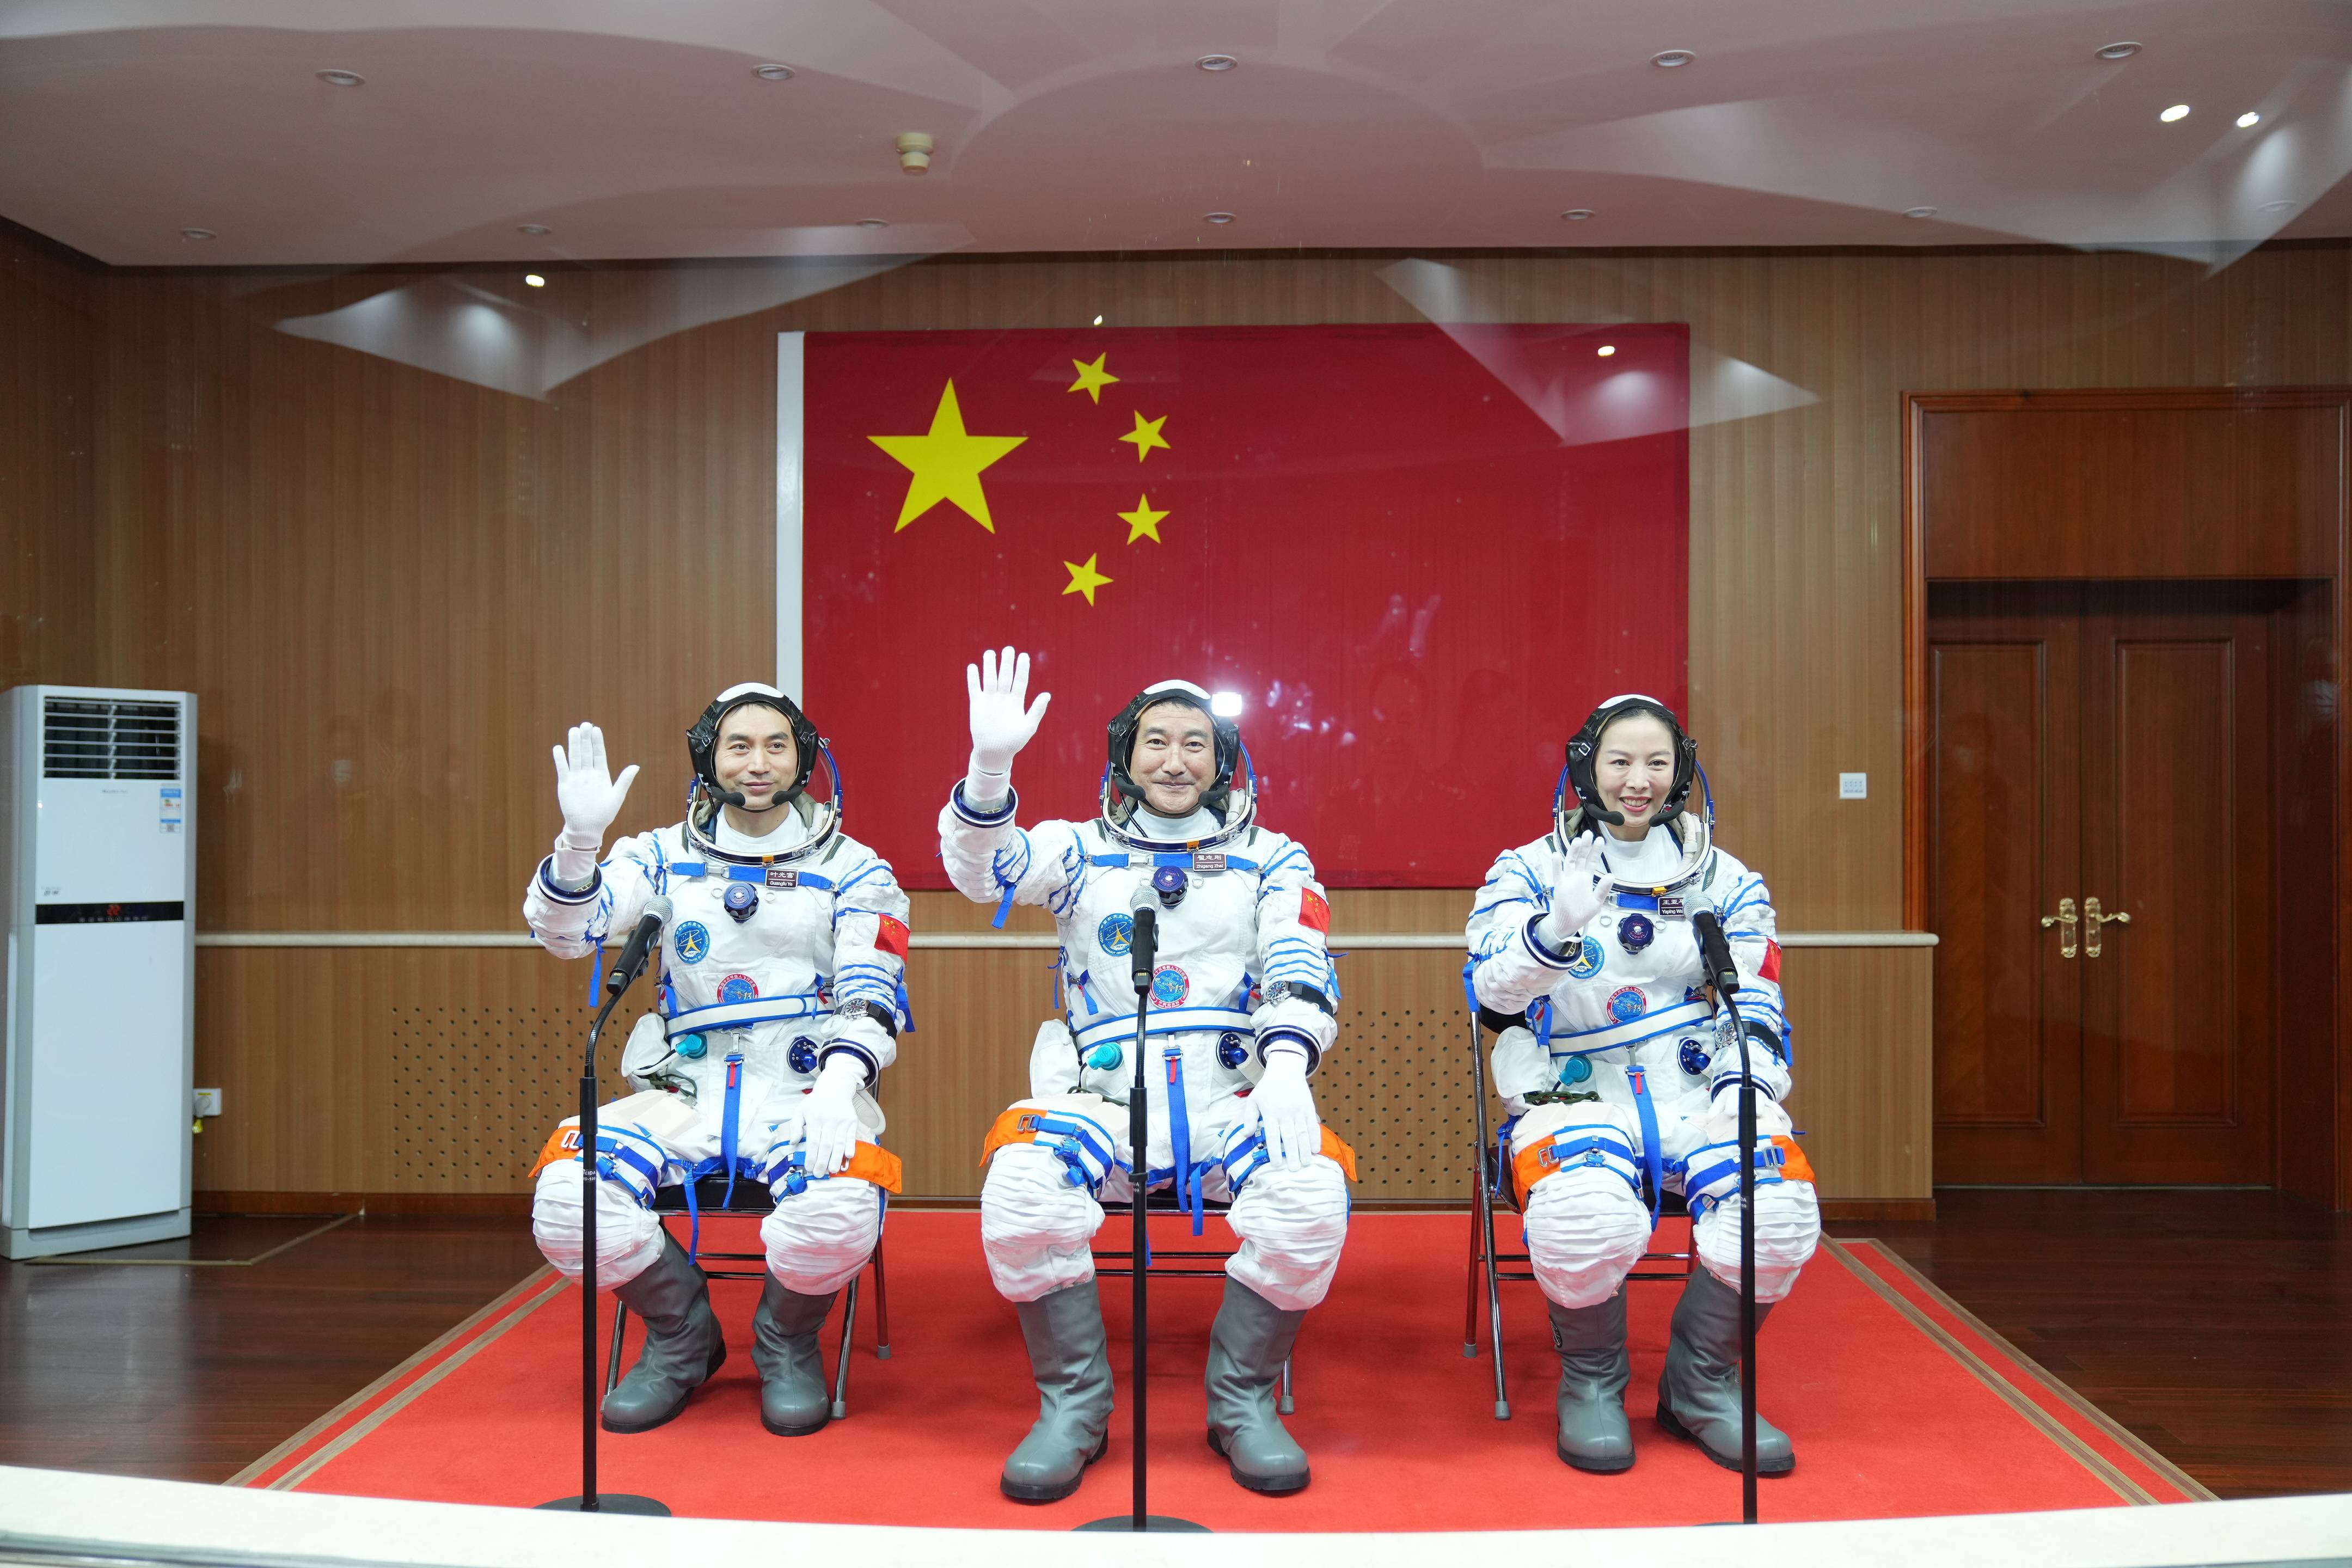 神舟十三号载人飞行任务航天员乘组出征仪式,在酒泉卫星发射中心举行